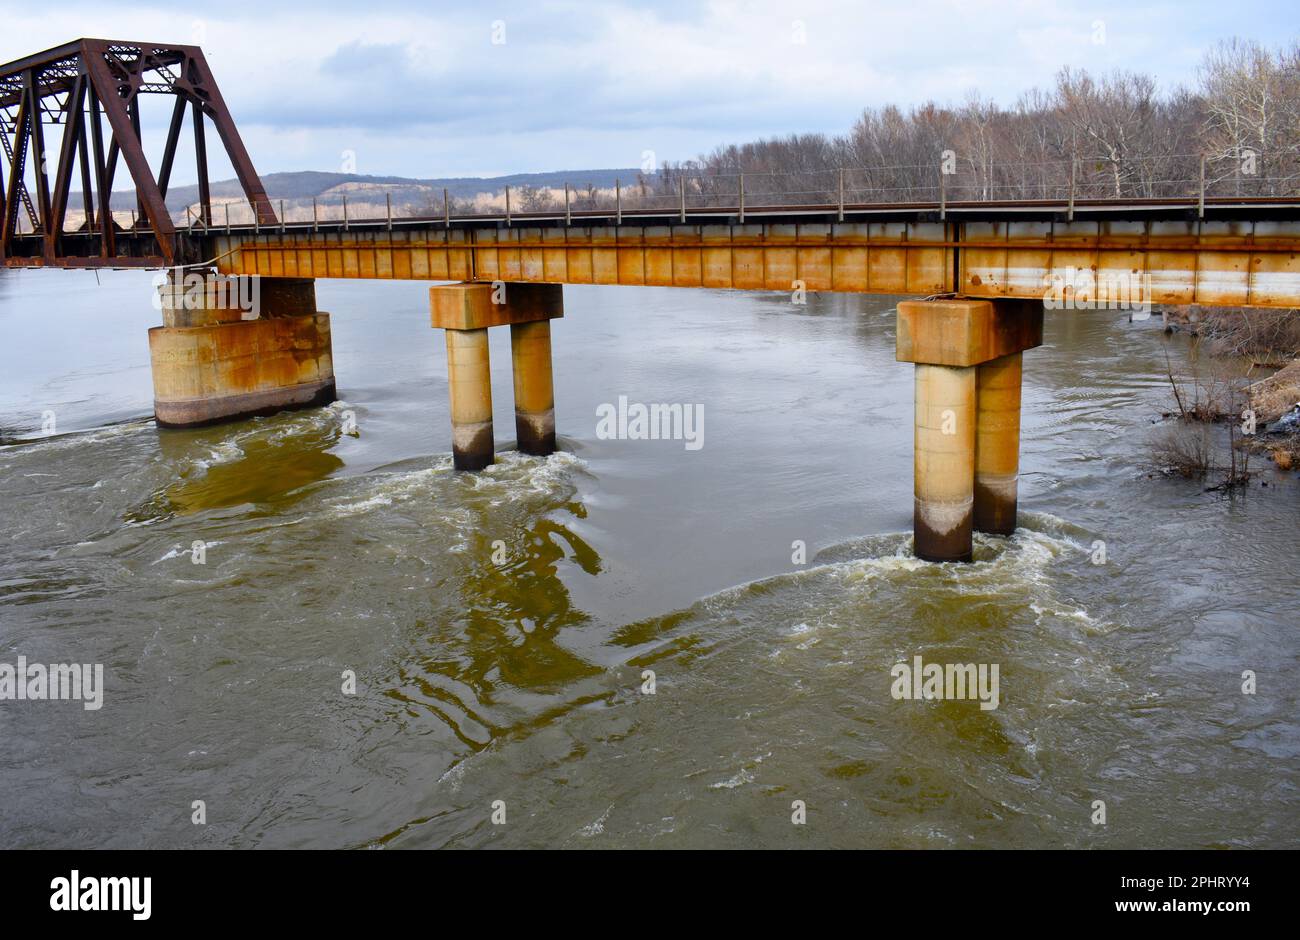 L'acqua alta del fiume Neosho (noto anche come Grand River) colpisce le pile di cemento del Grand Bridge a Fort Gibson, Oklahoma. Foto Stock